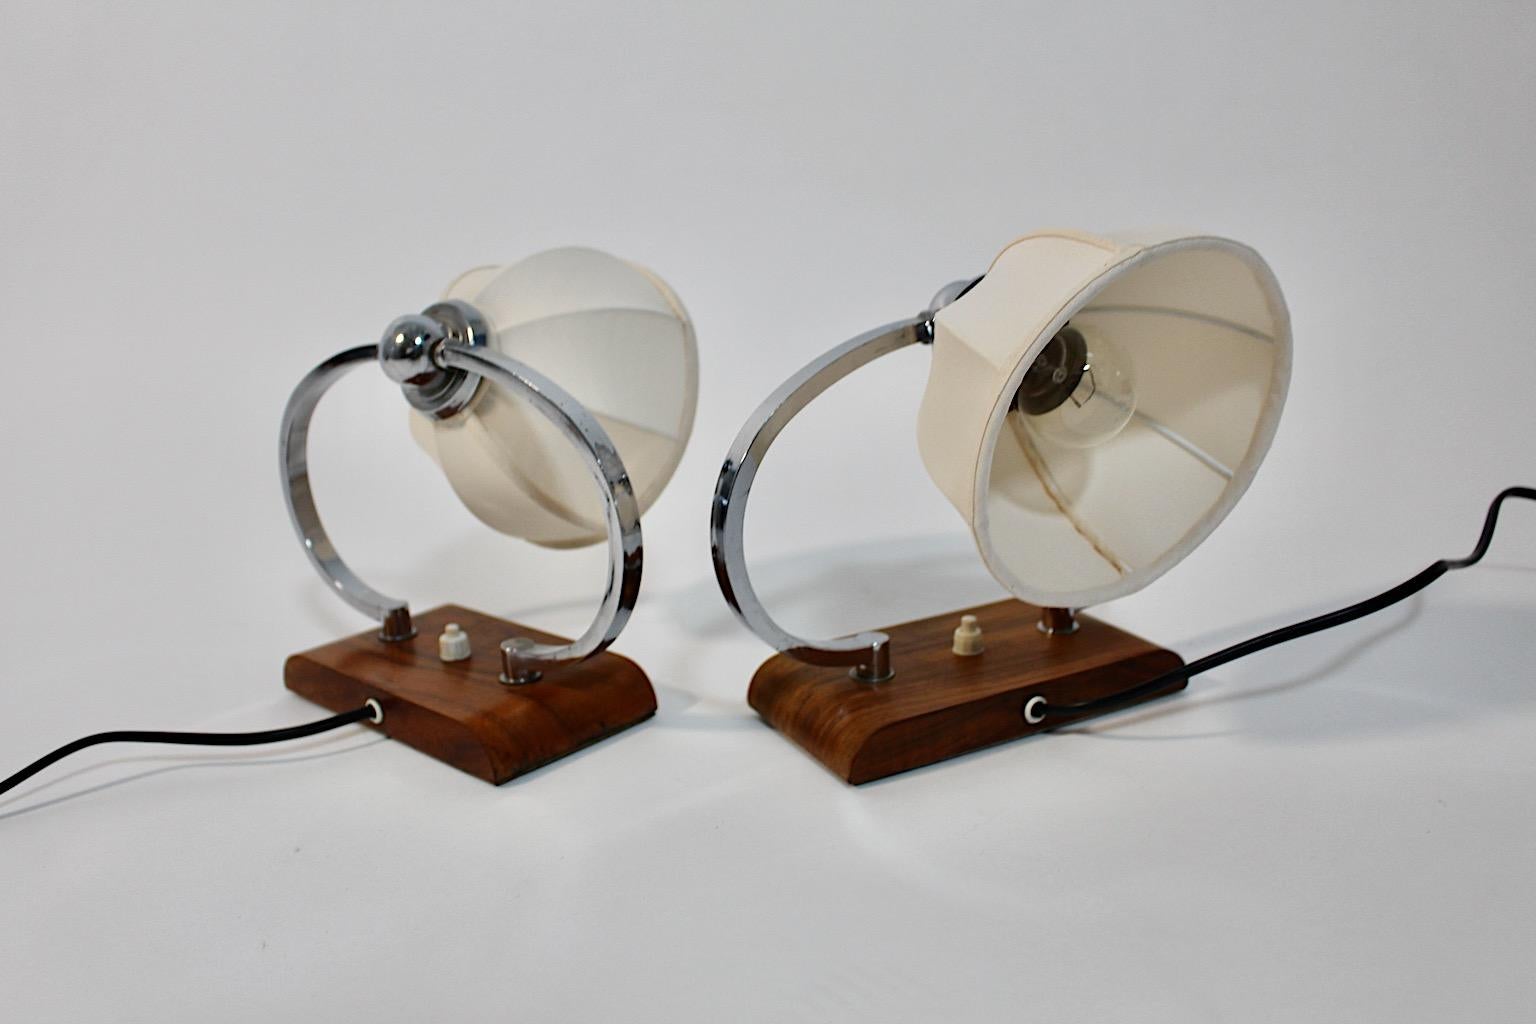 Art Deco vintage paire de lampes de chevet ou lampes de table en noyer et métal chromé circa 1925 Autriche.
Superbe paire de lampes de chevet ou lampes de table avec une monture incurvée en métal chromé et une base rectangulaire en noyer, chacune